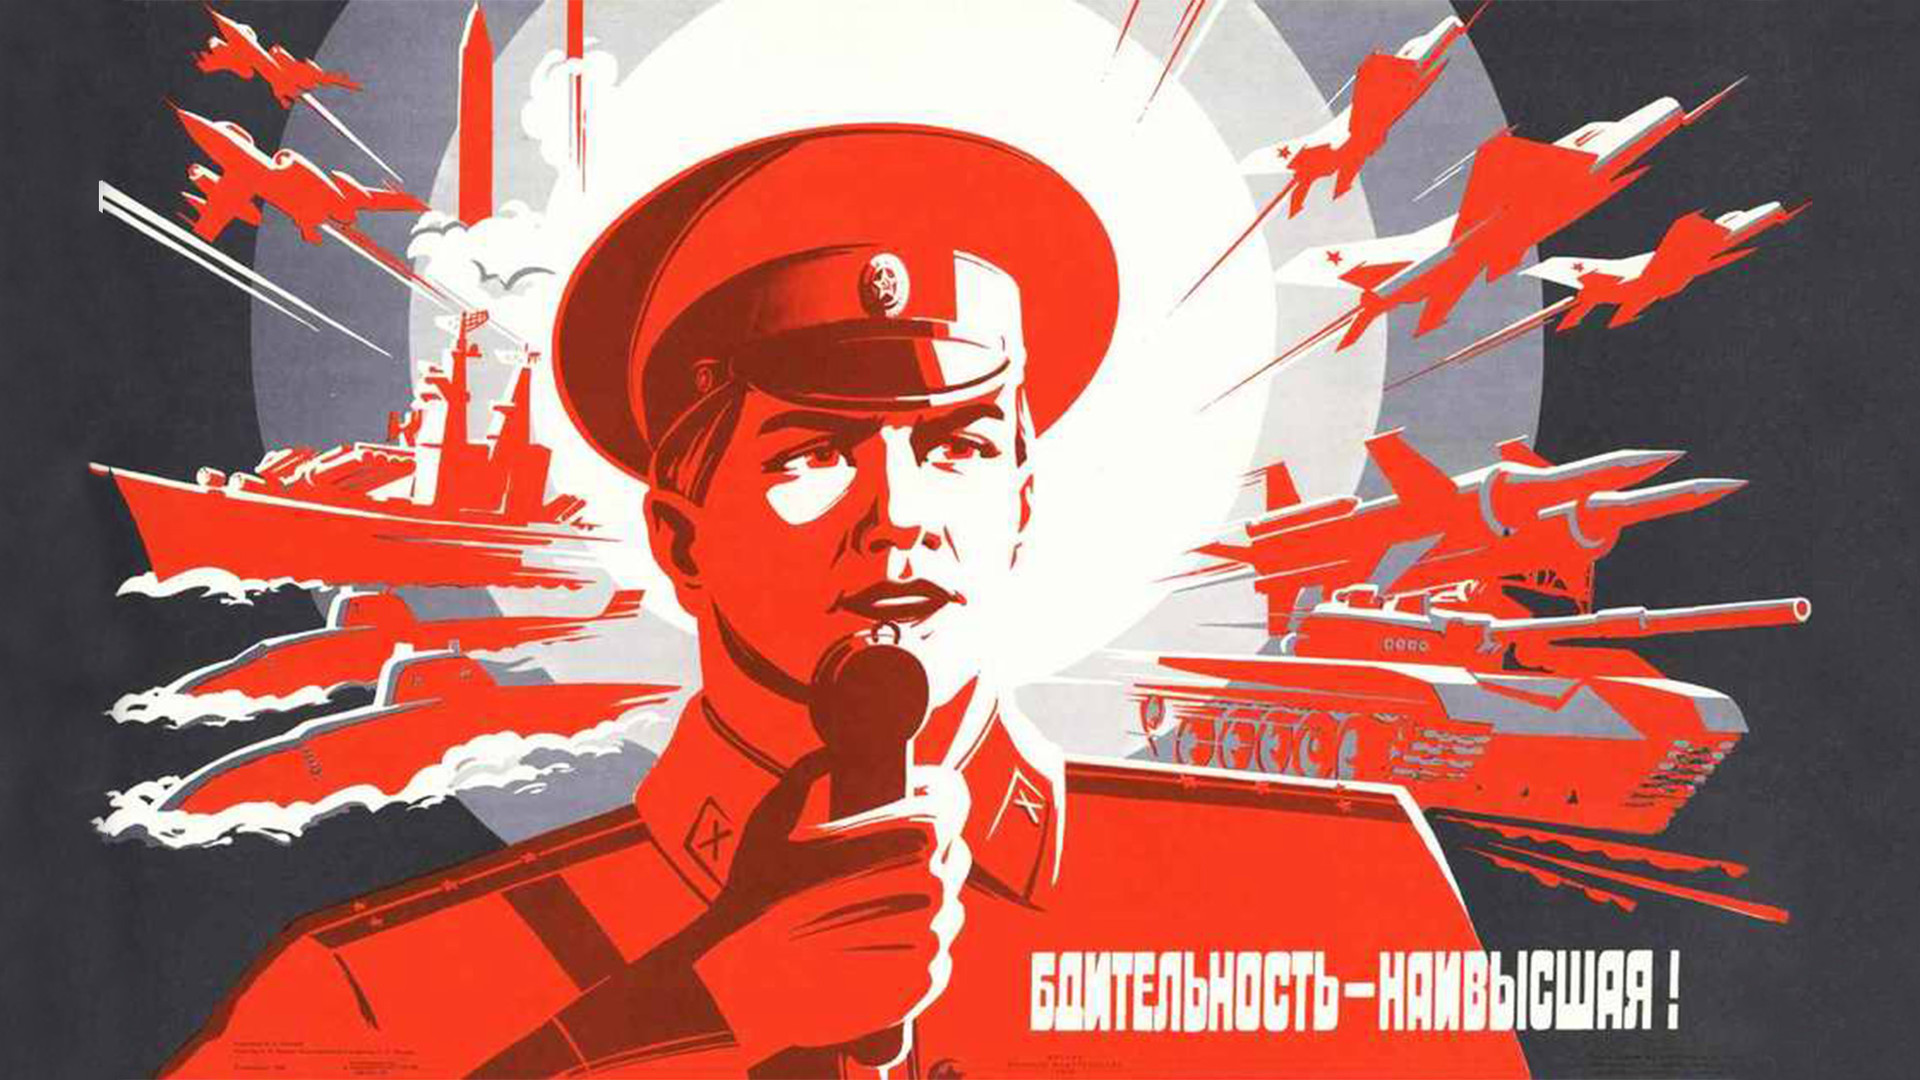 ソビエト市民が自国軍を無敵と考えていた理由が分かるポスター ロシア ビヨンド